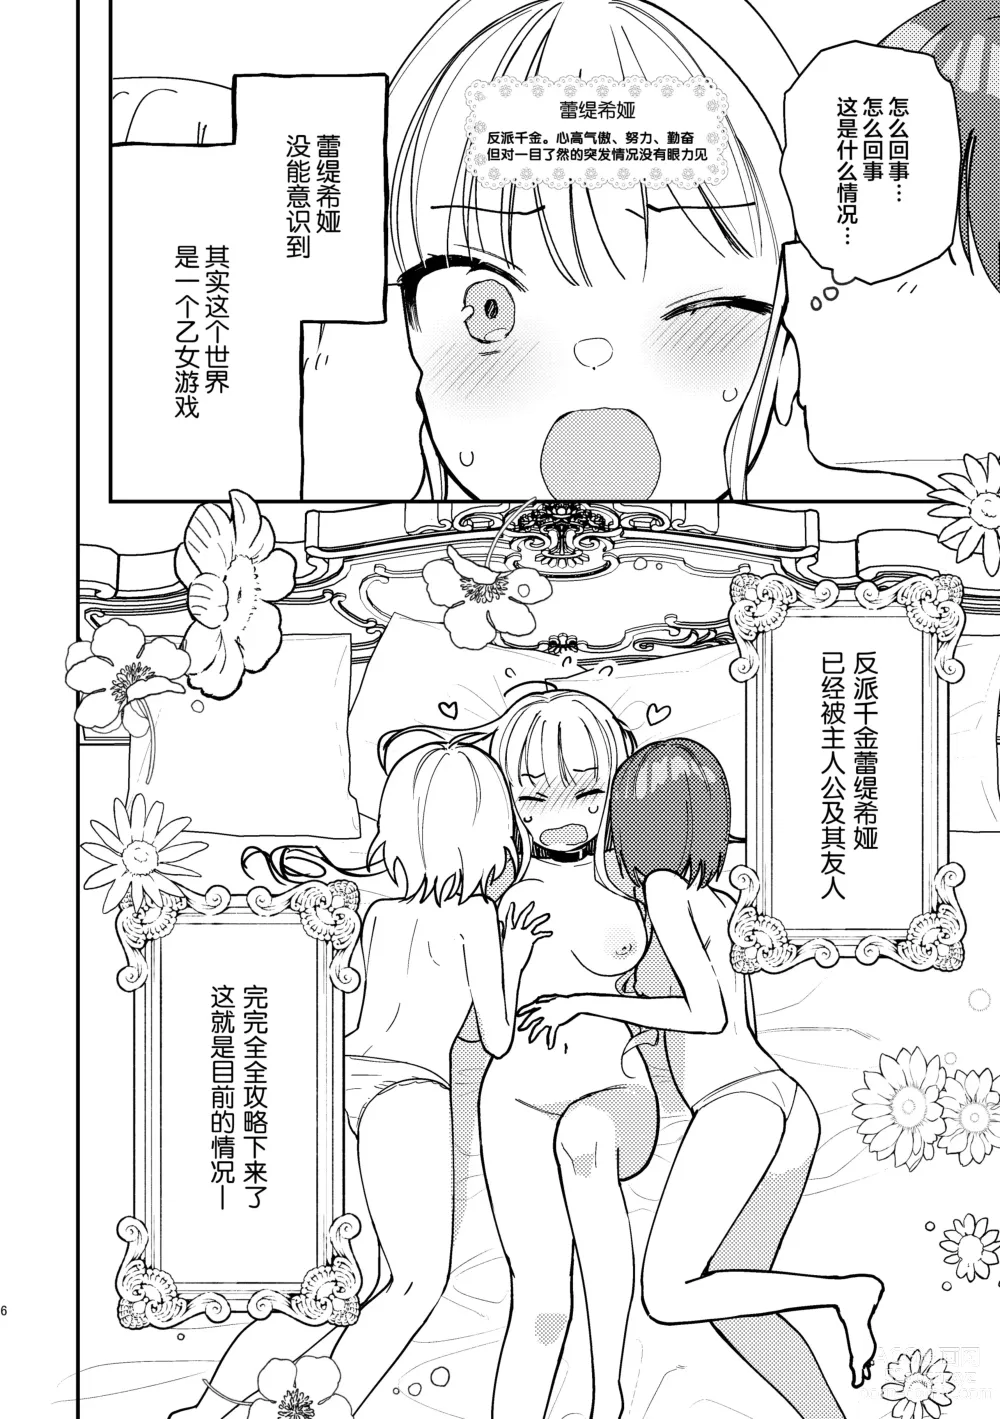 Page 7 of doujinshi 3P Yuri Ecchi Anthology